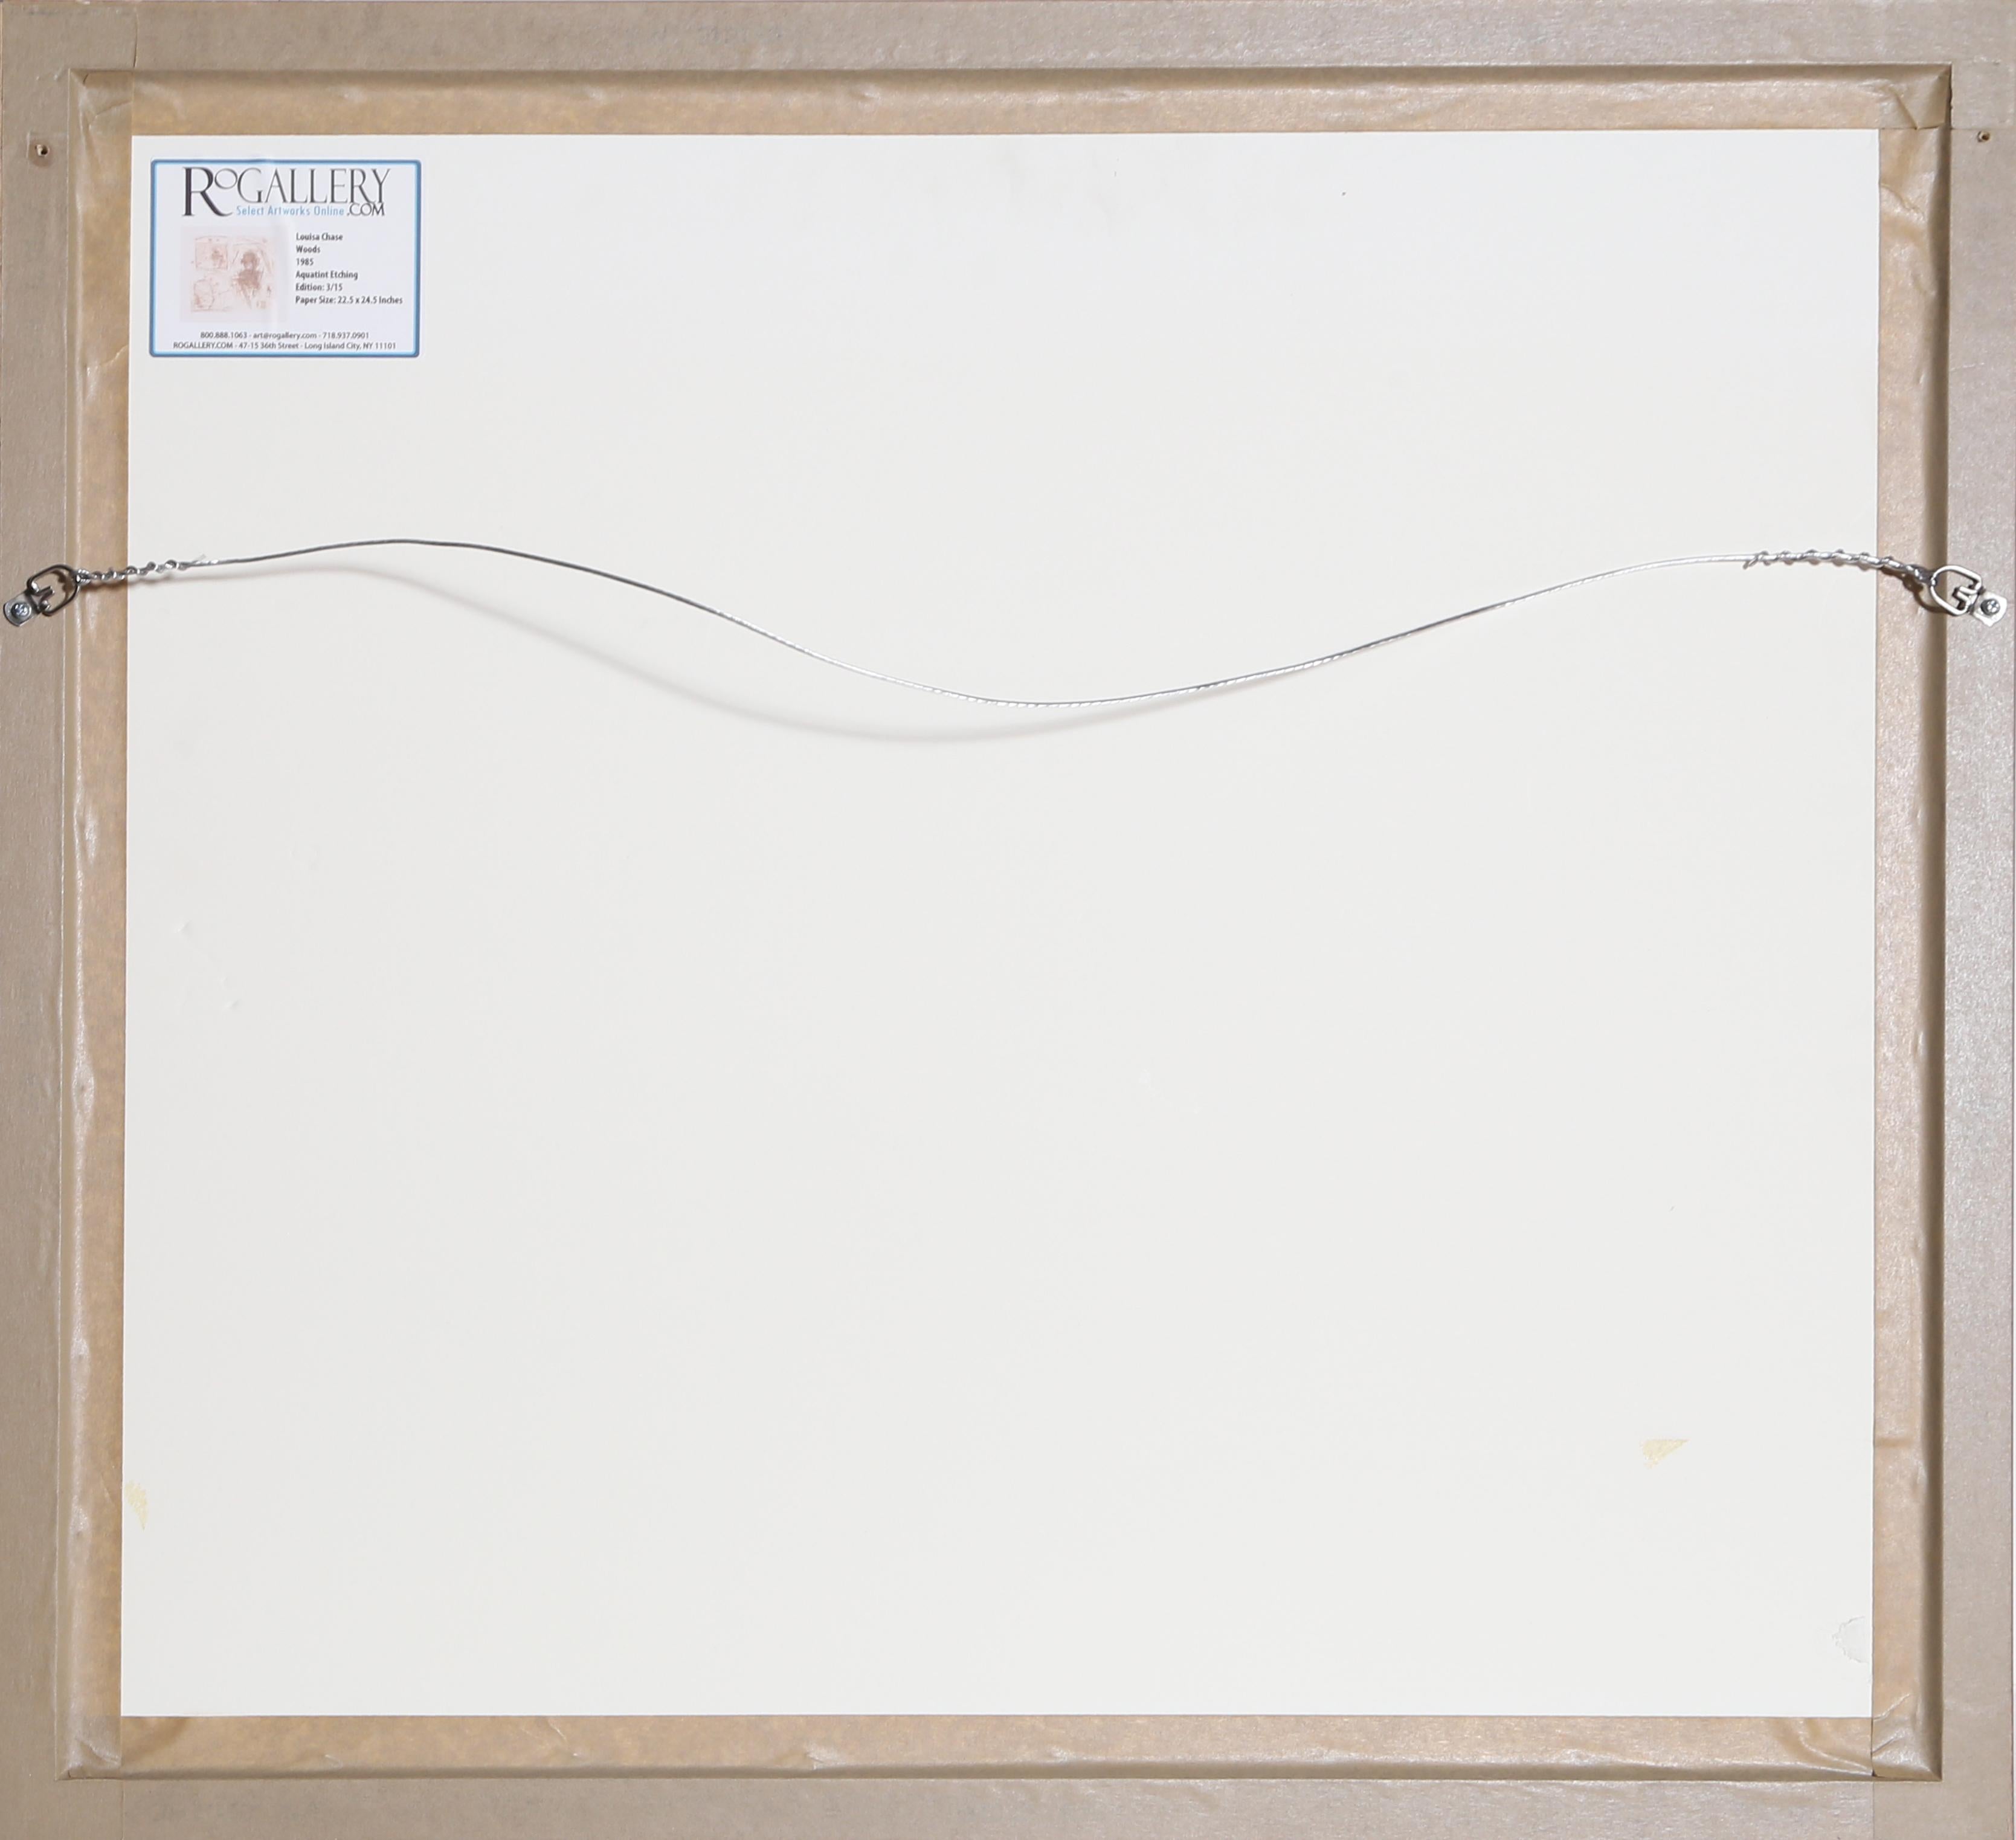 Artistics : Louisa Chase, Américaine (1951 - 2016)
Titre :	Bois
Année : 1985
Moyen d'expression : Aquatinte, signée et numérotée au crayon
Edition : 3/15
Taille du papier :	22.5 x 24.5 pouces [57.15 x 62.23 cm]
Taille du cadre : 27 x 29 pouces